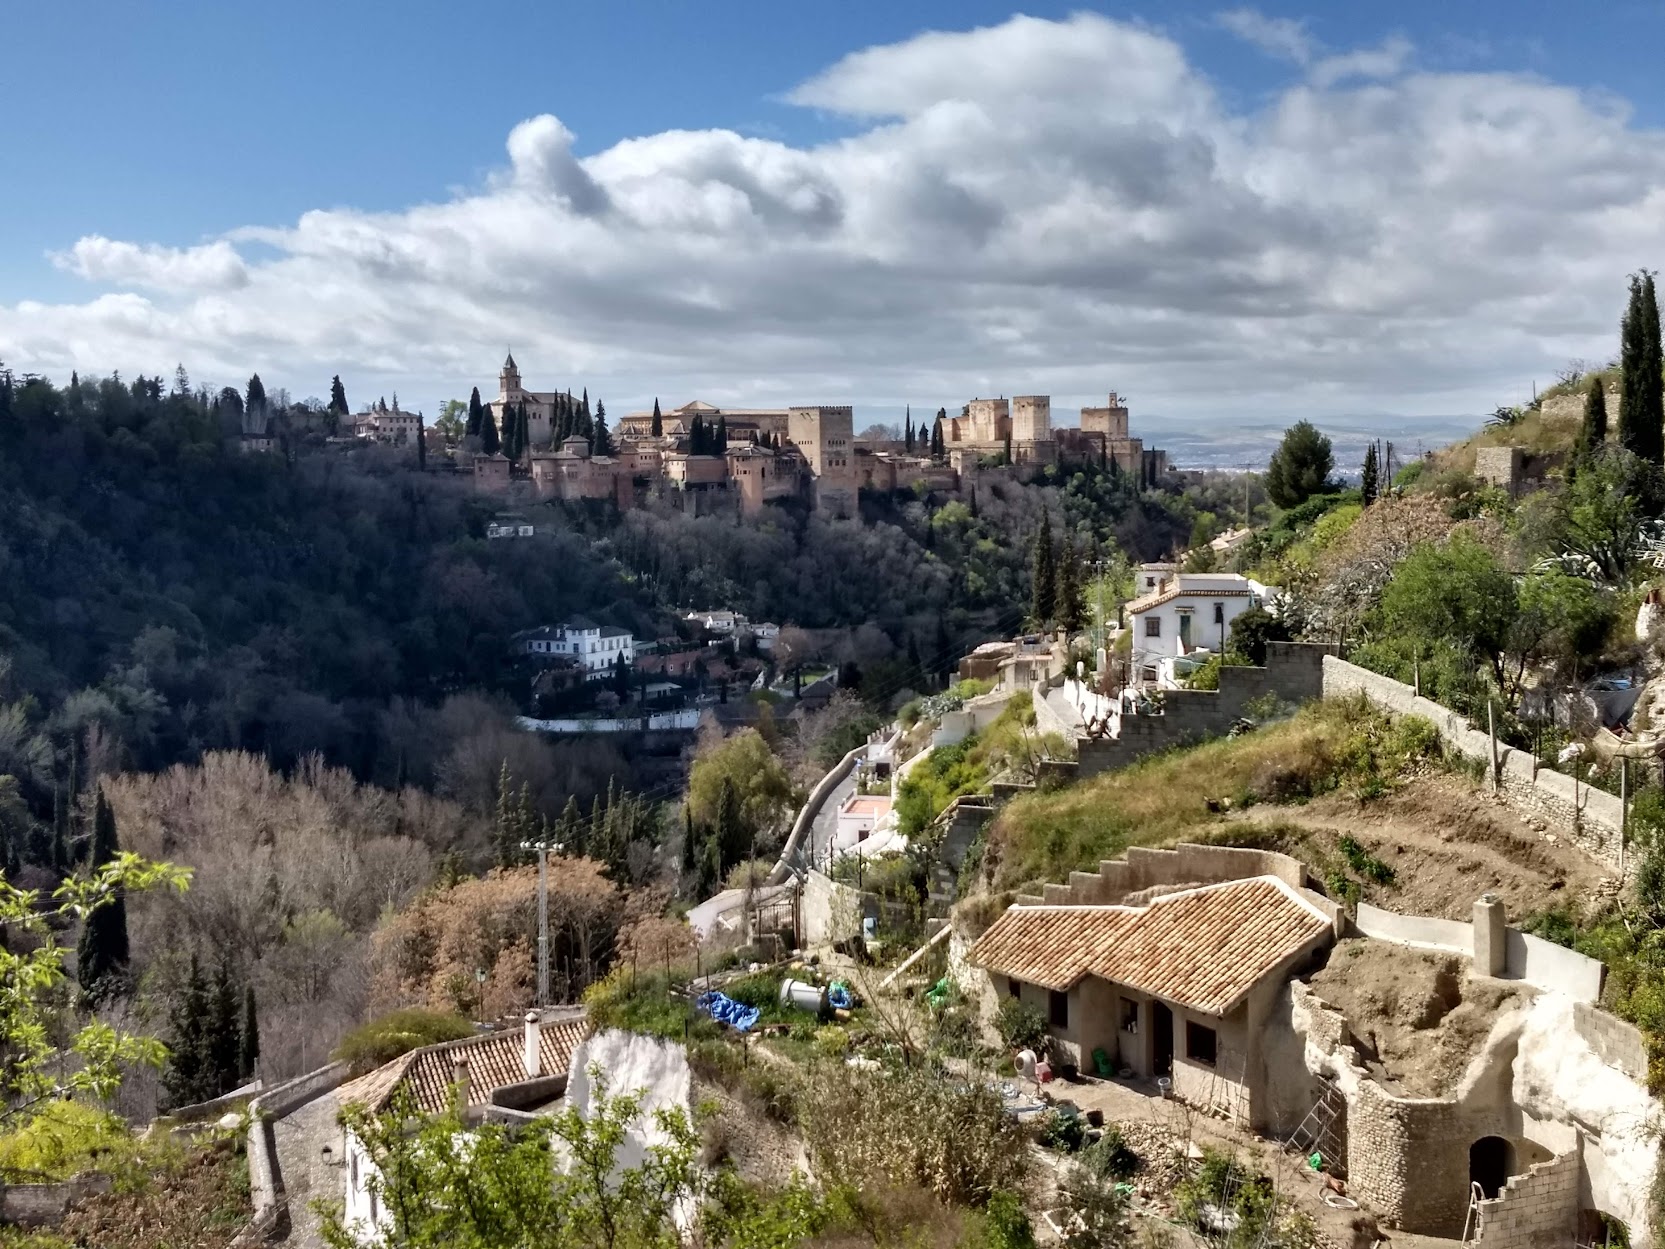 Visiter Grenade près de Málaga en Espagne dans notre article Visiter Málaga en Espagne : Que voir et que faire à Málaga en 6 incontournables #malaga #espagne #europe #voyage #andalousie